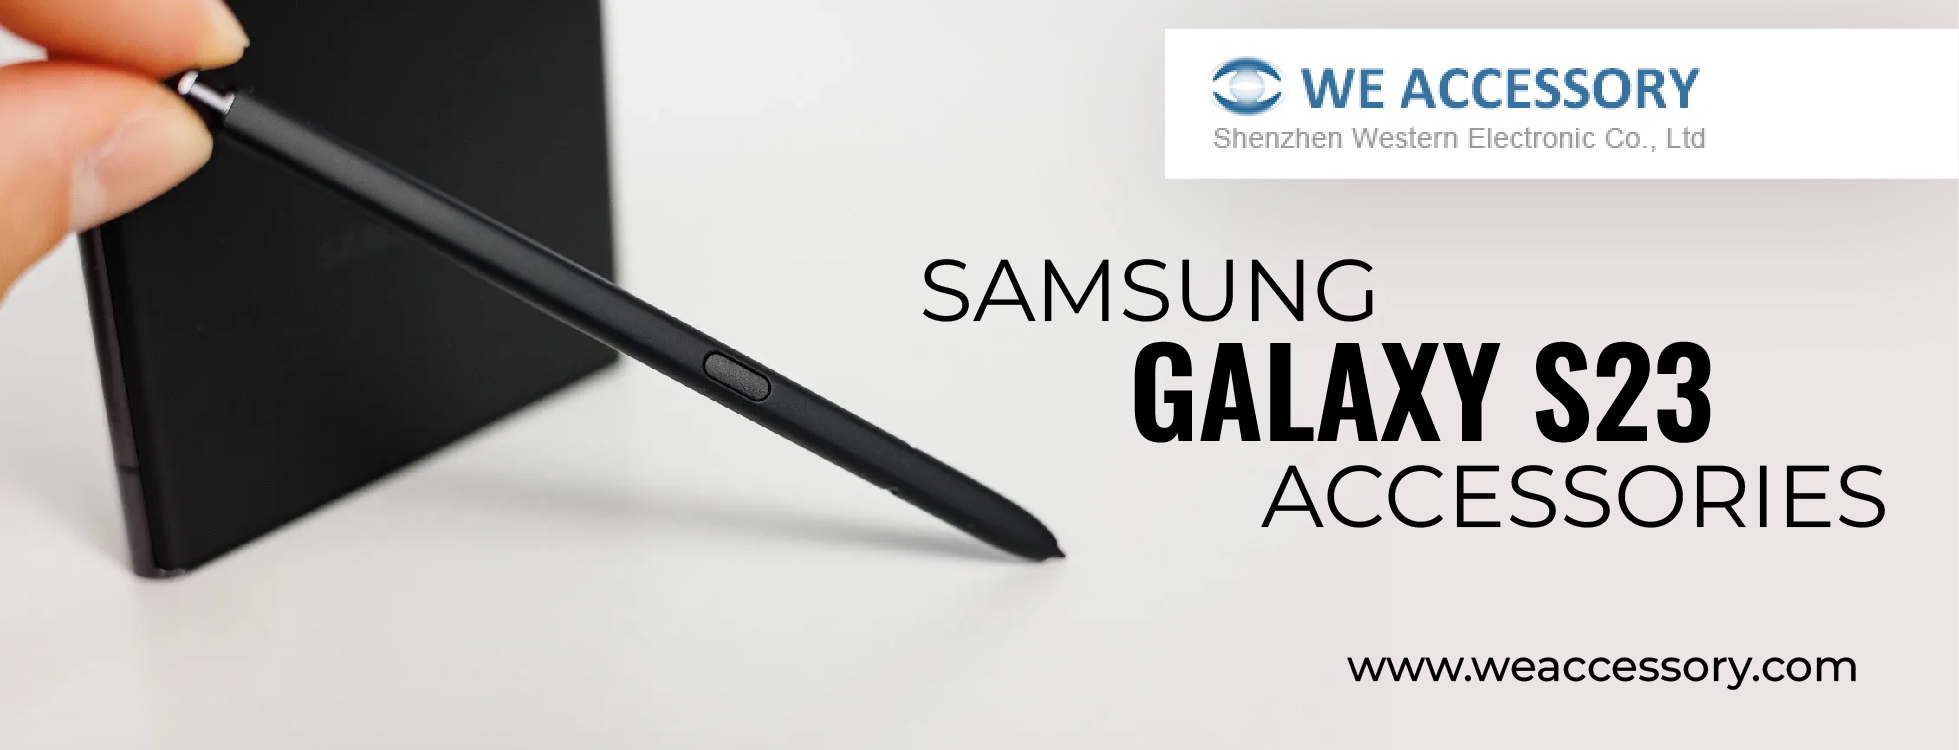 Samsung Galaxy S23 Accessories